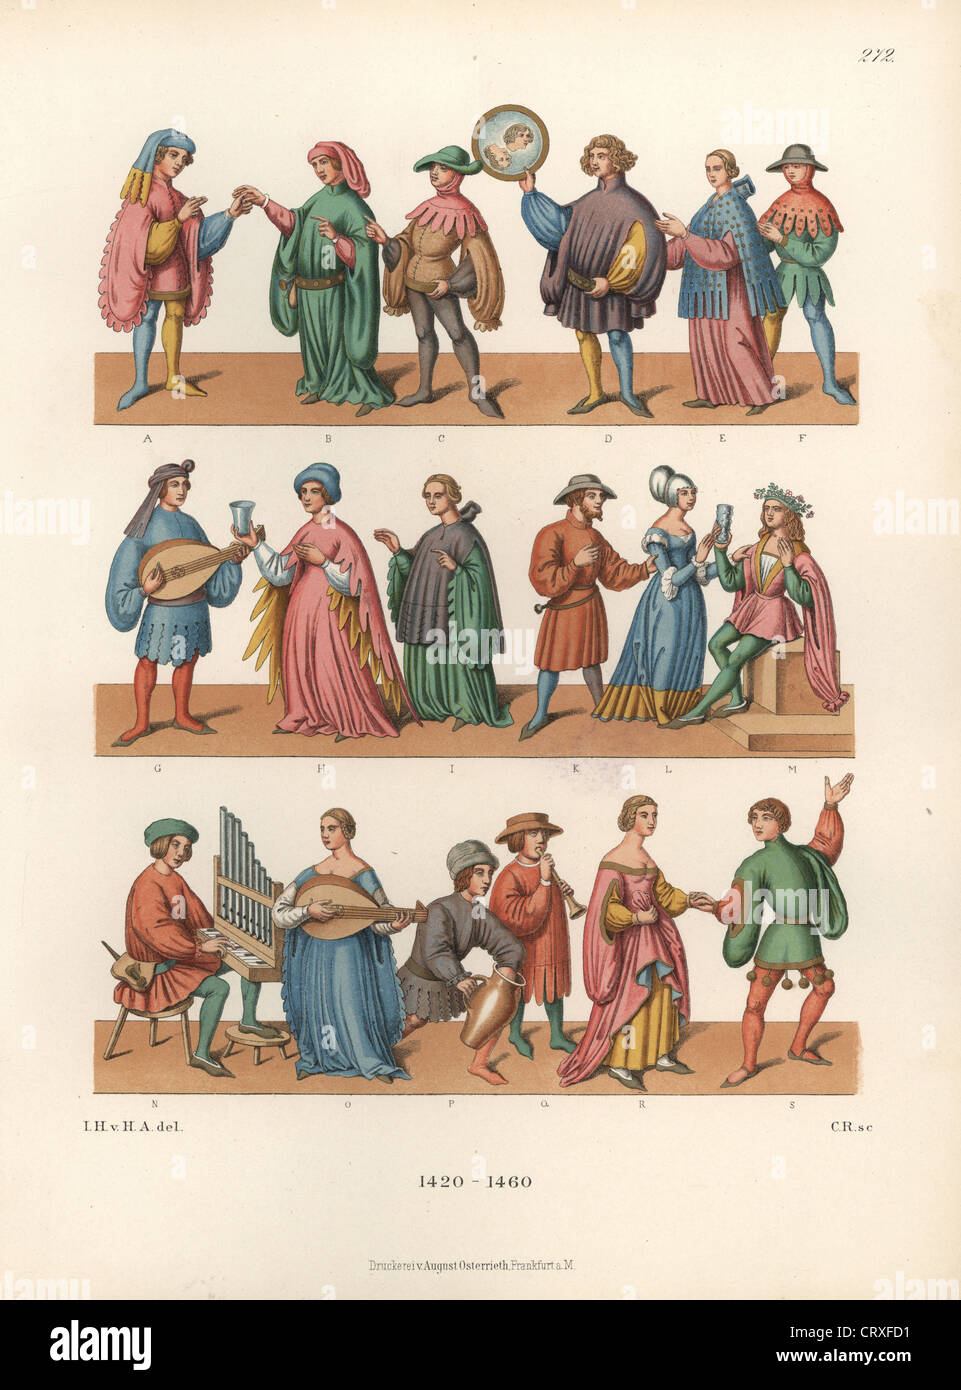 Mode de la mi 15e siècle montrant un médecin, musiciens jouant du luth et spinets, fonctionnaires, danseurs et buveurs excessifs Banque D'Images